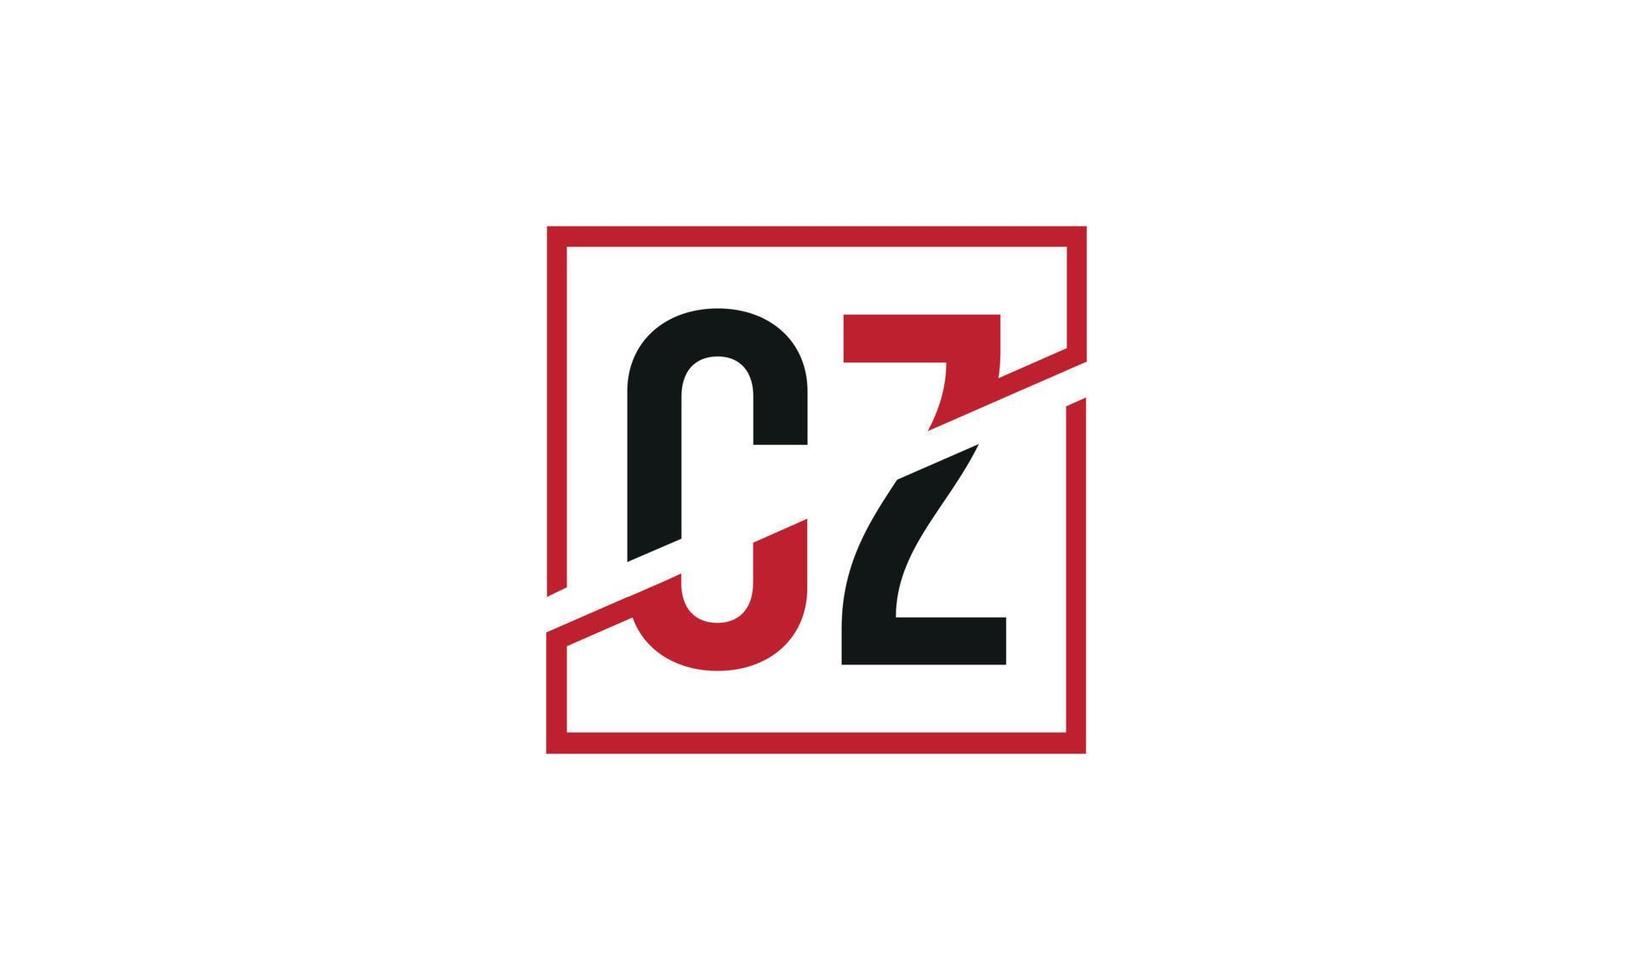 design de logotipo cz. design inicial do monograma do logotipo da letra cz na cor preta e vermelha com forma quadrada. vetor profissional